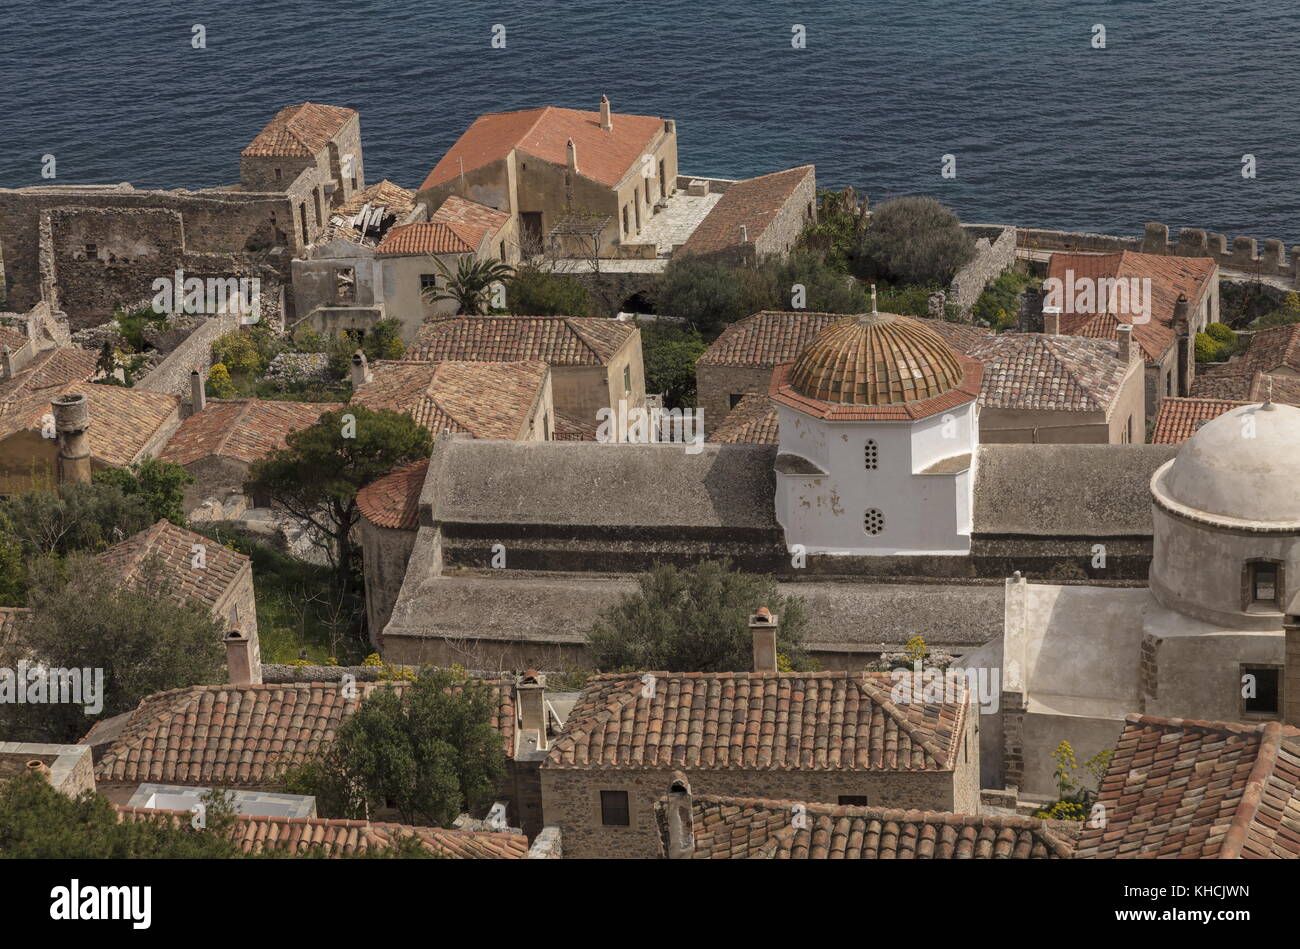 La ciudad bizantina de Monemvasia desde arriba, laconia, Peloponeso, Grecia. Foto de stock